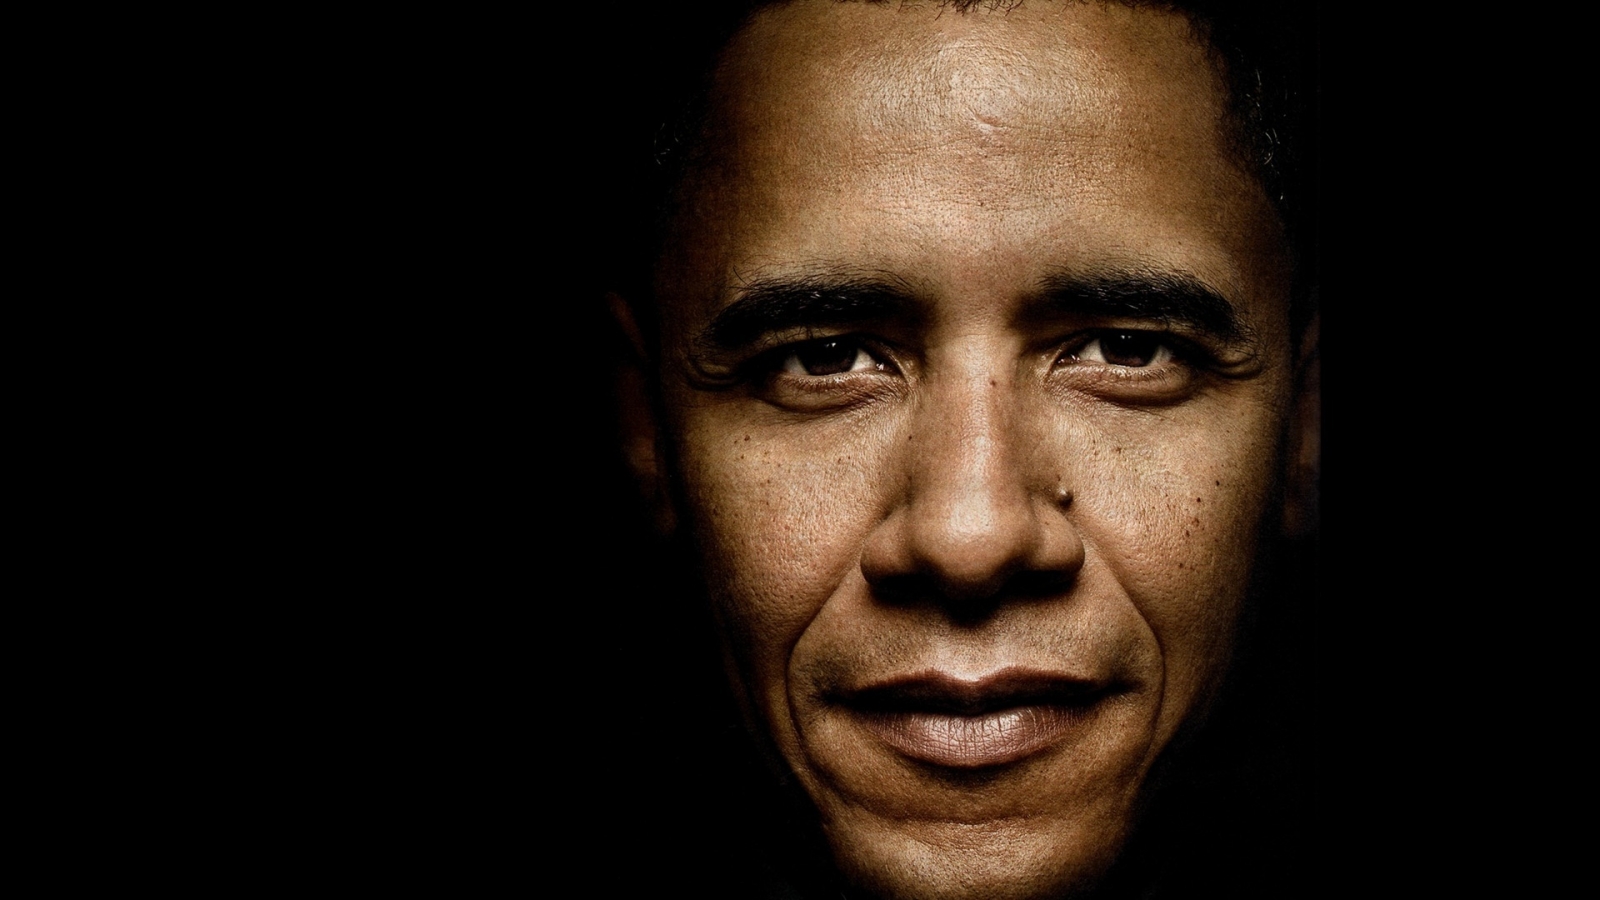 Barack Obama Close Up for 1600 x 900 HDTV resolution